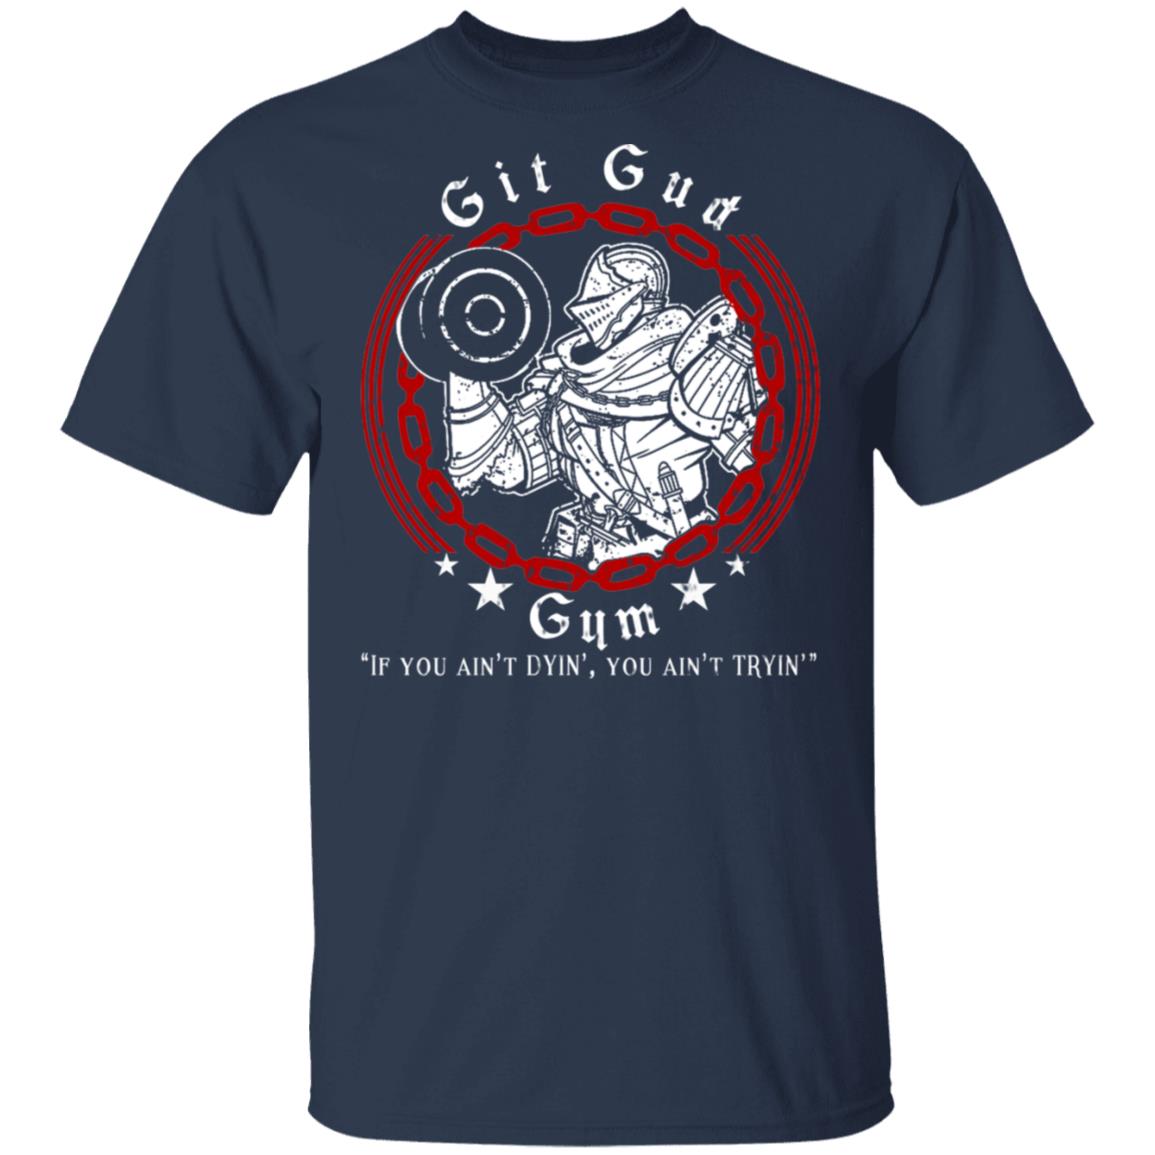 Git Gud Gym If You Ain’t Dyin’ You Ain’t Tryin’ Shirt